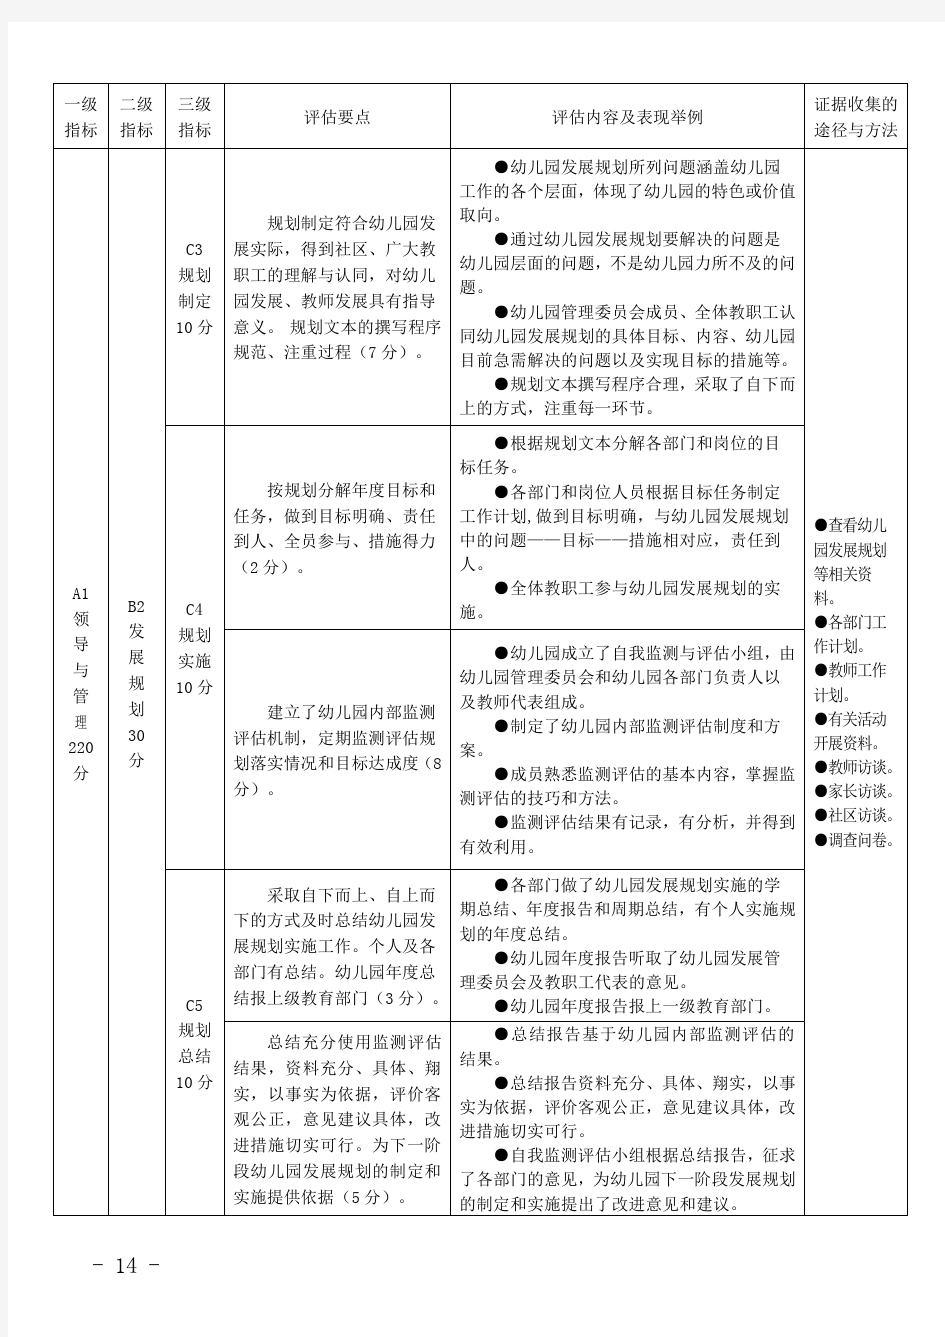 贵州省省级示范幼儿园评估方案(试行)  7月18日  终稿 (2)